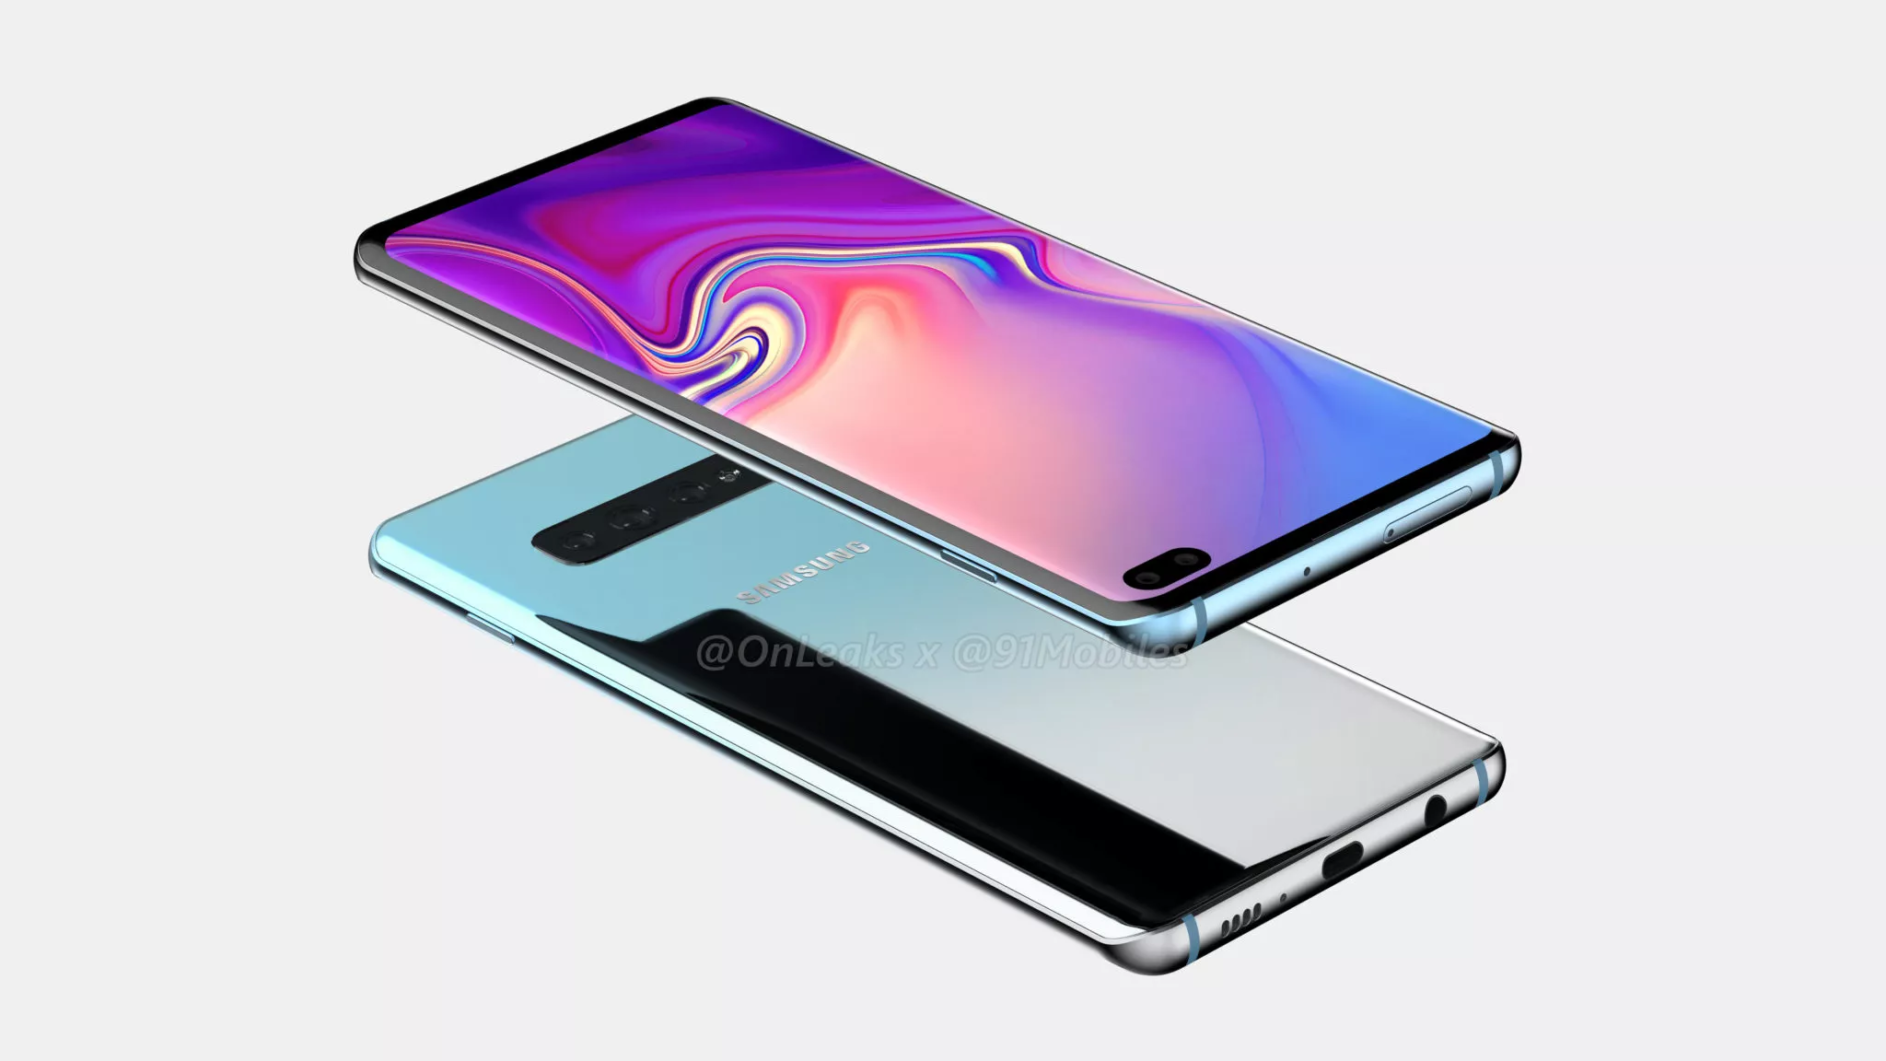 Samsung Galaxy S10 Plus render